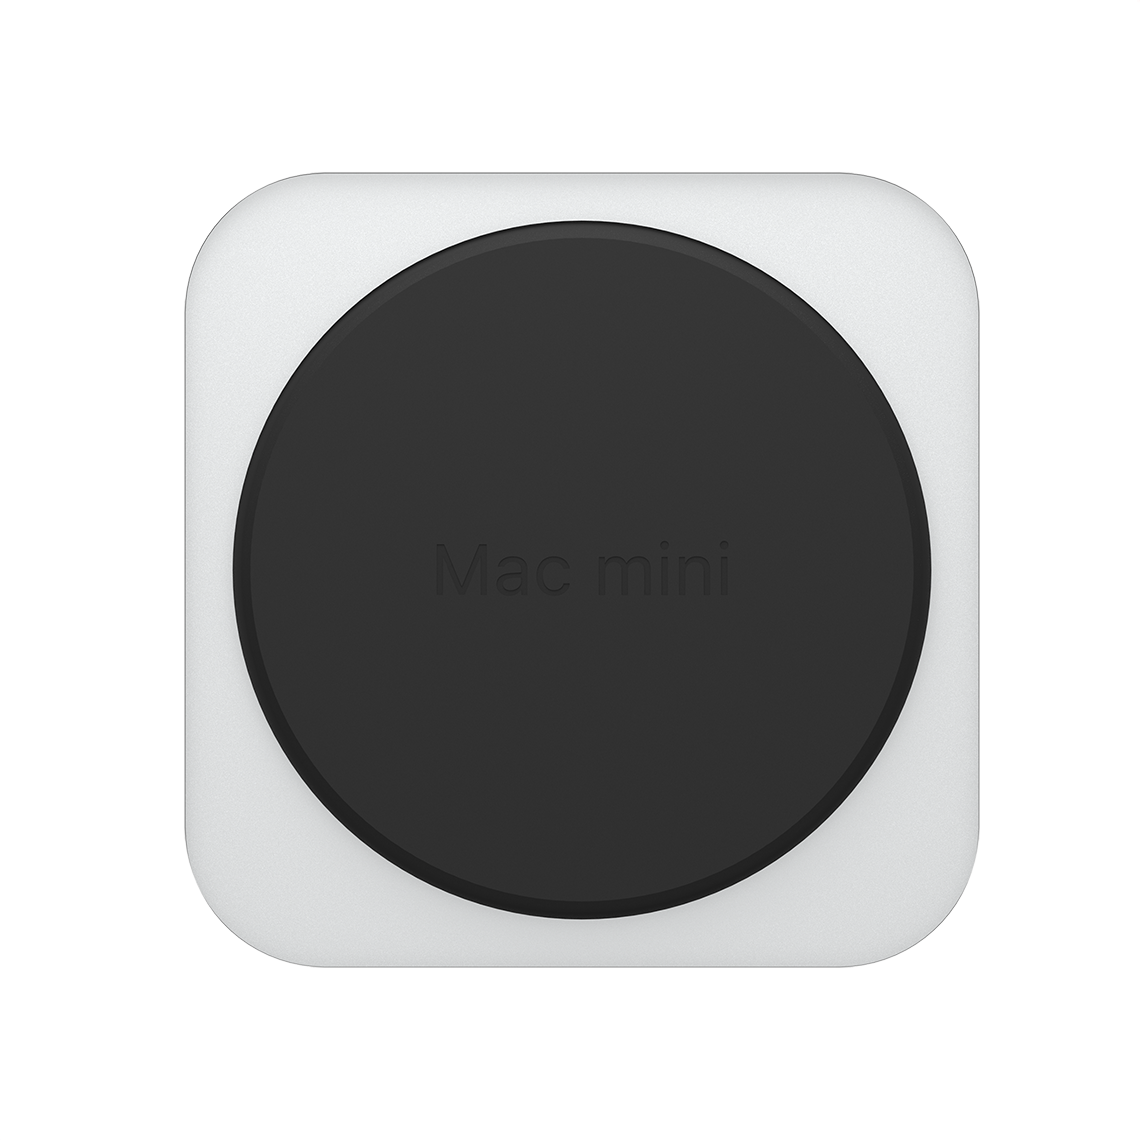 Apple M2 Pro Mac mini - 32GB RAM, 8TB Flash, 19-Core GPU, Grade A